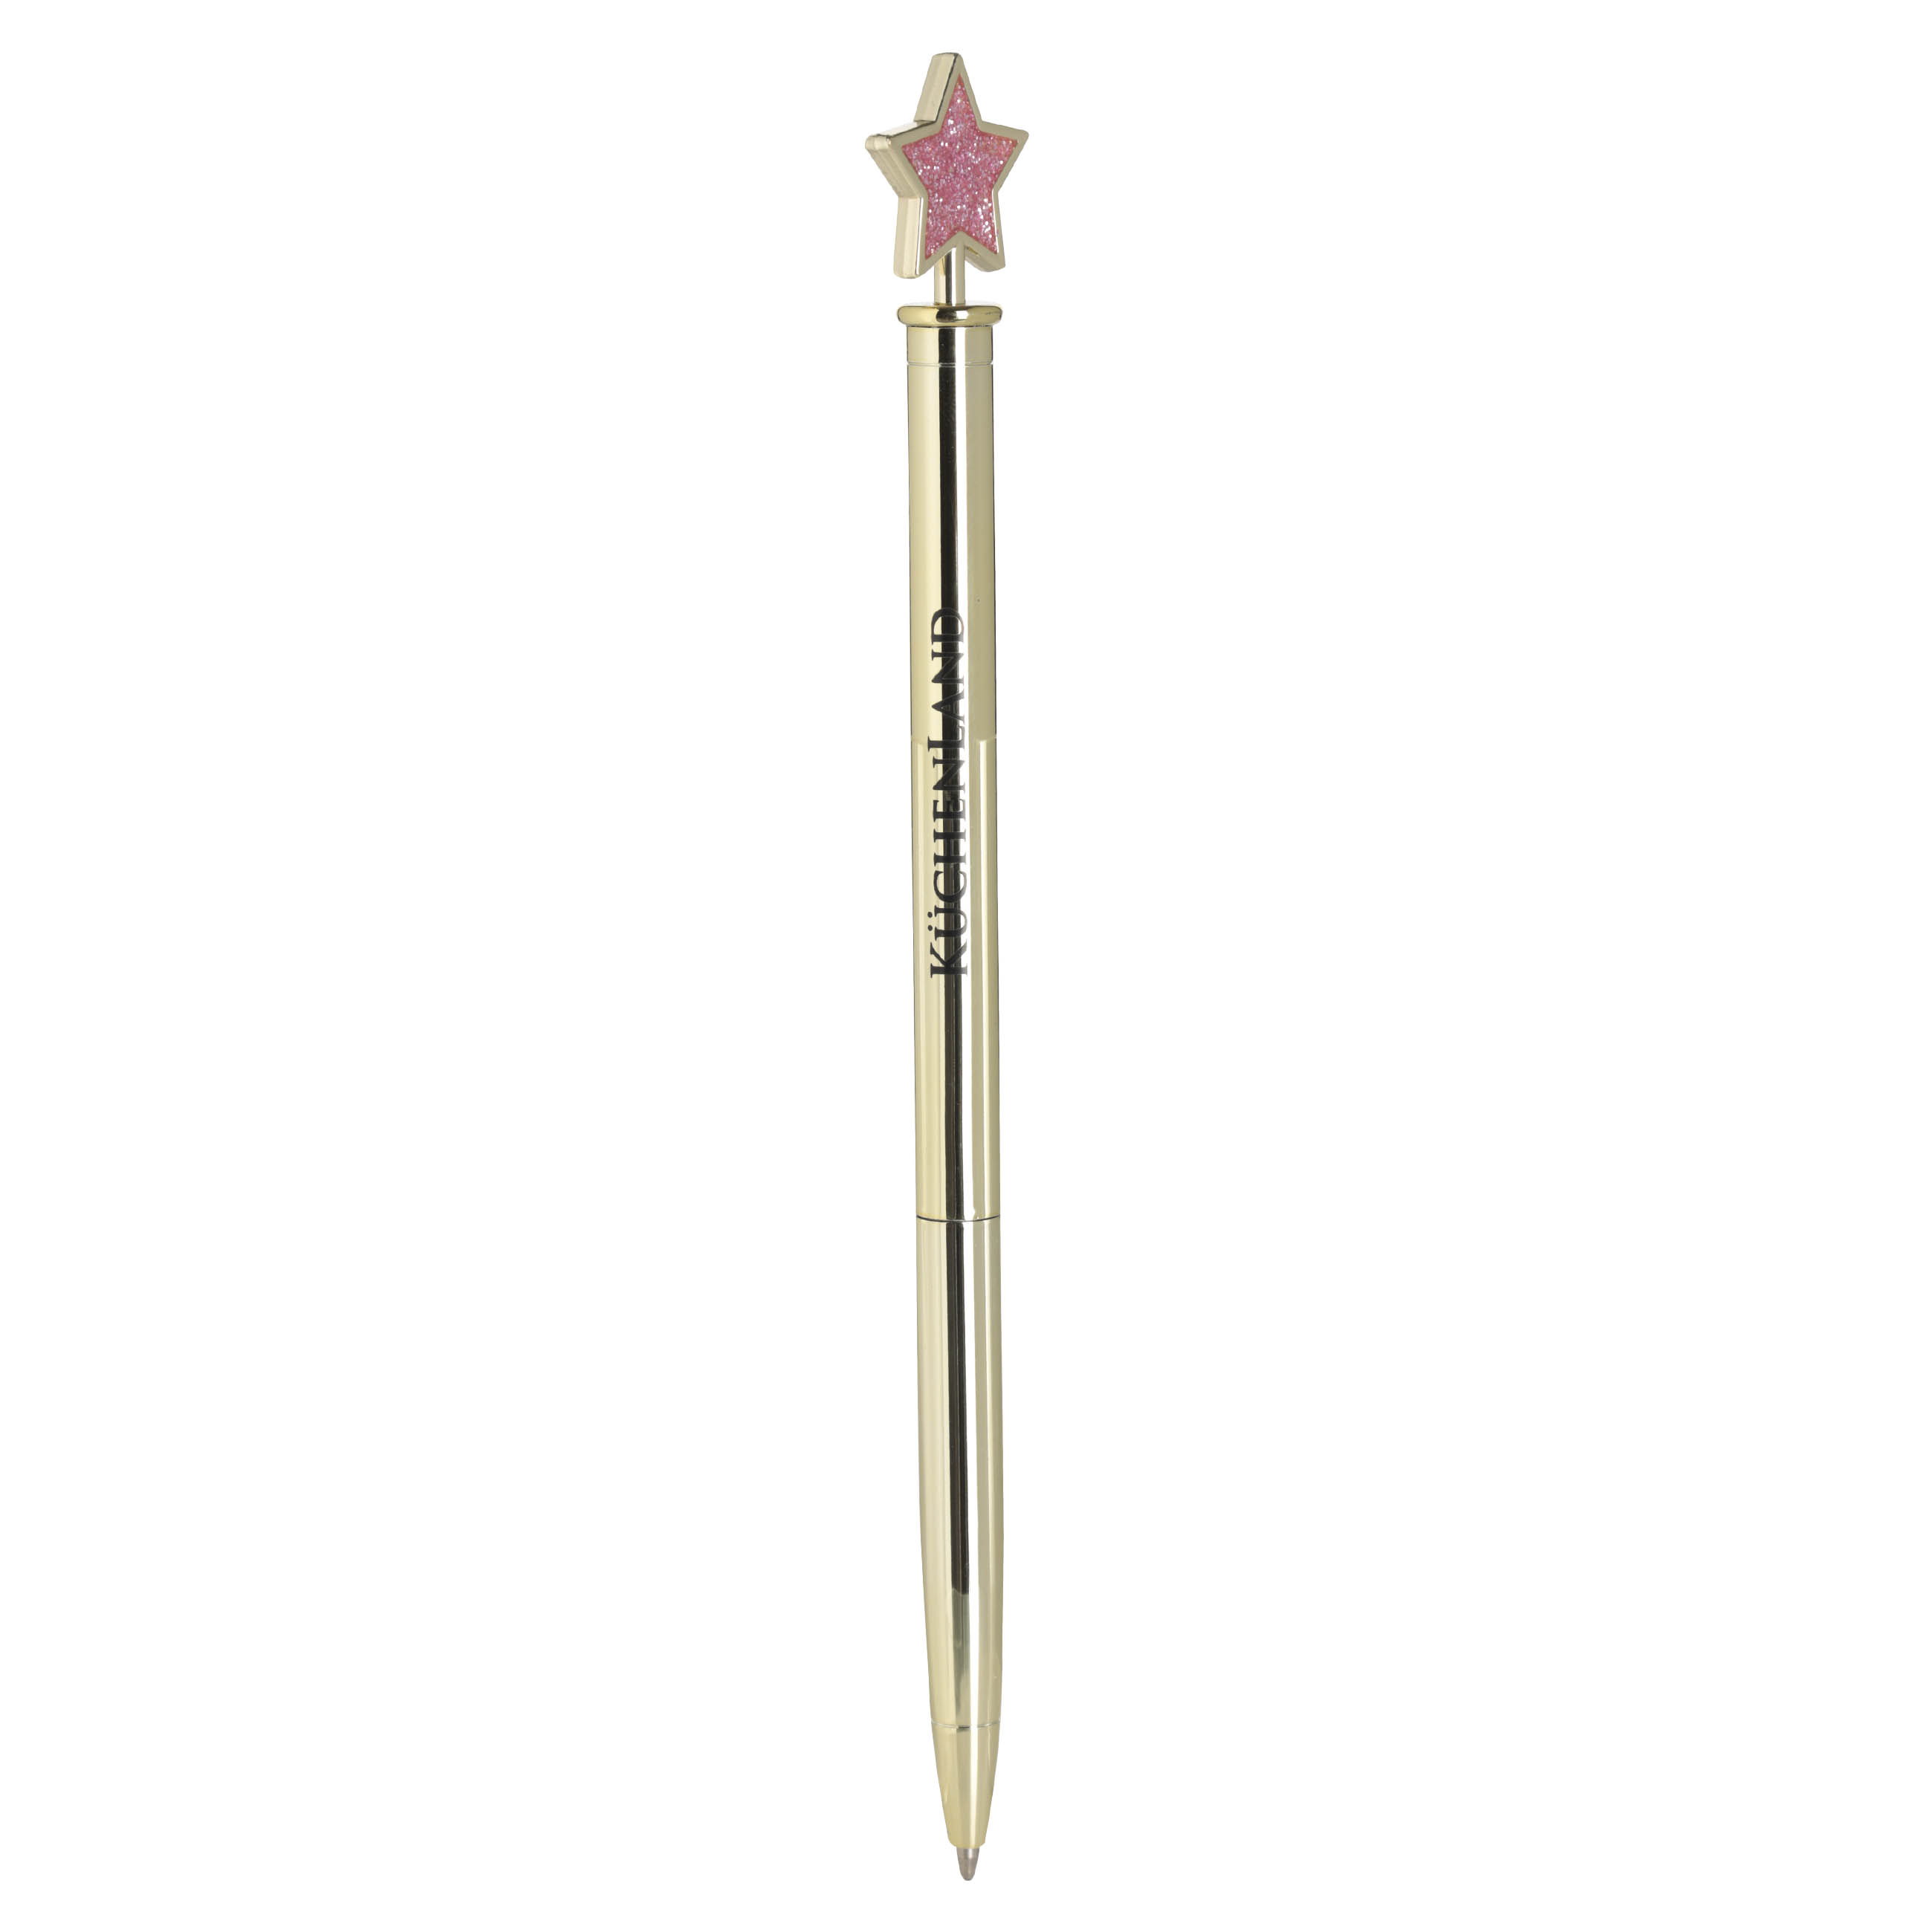 Ручка шариковая, 15 см, с фигуркой, металл, золотистая, Звезда, Draw figure изображение № 2